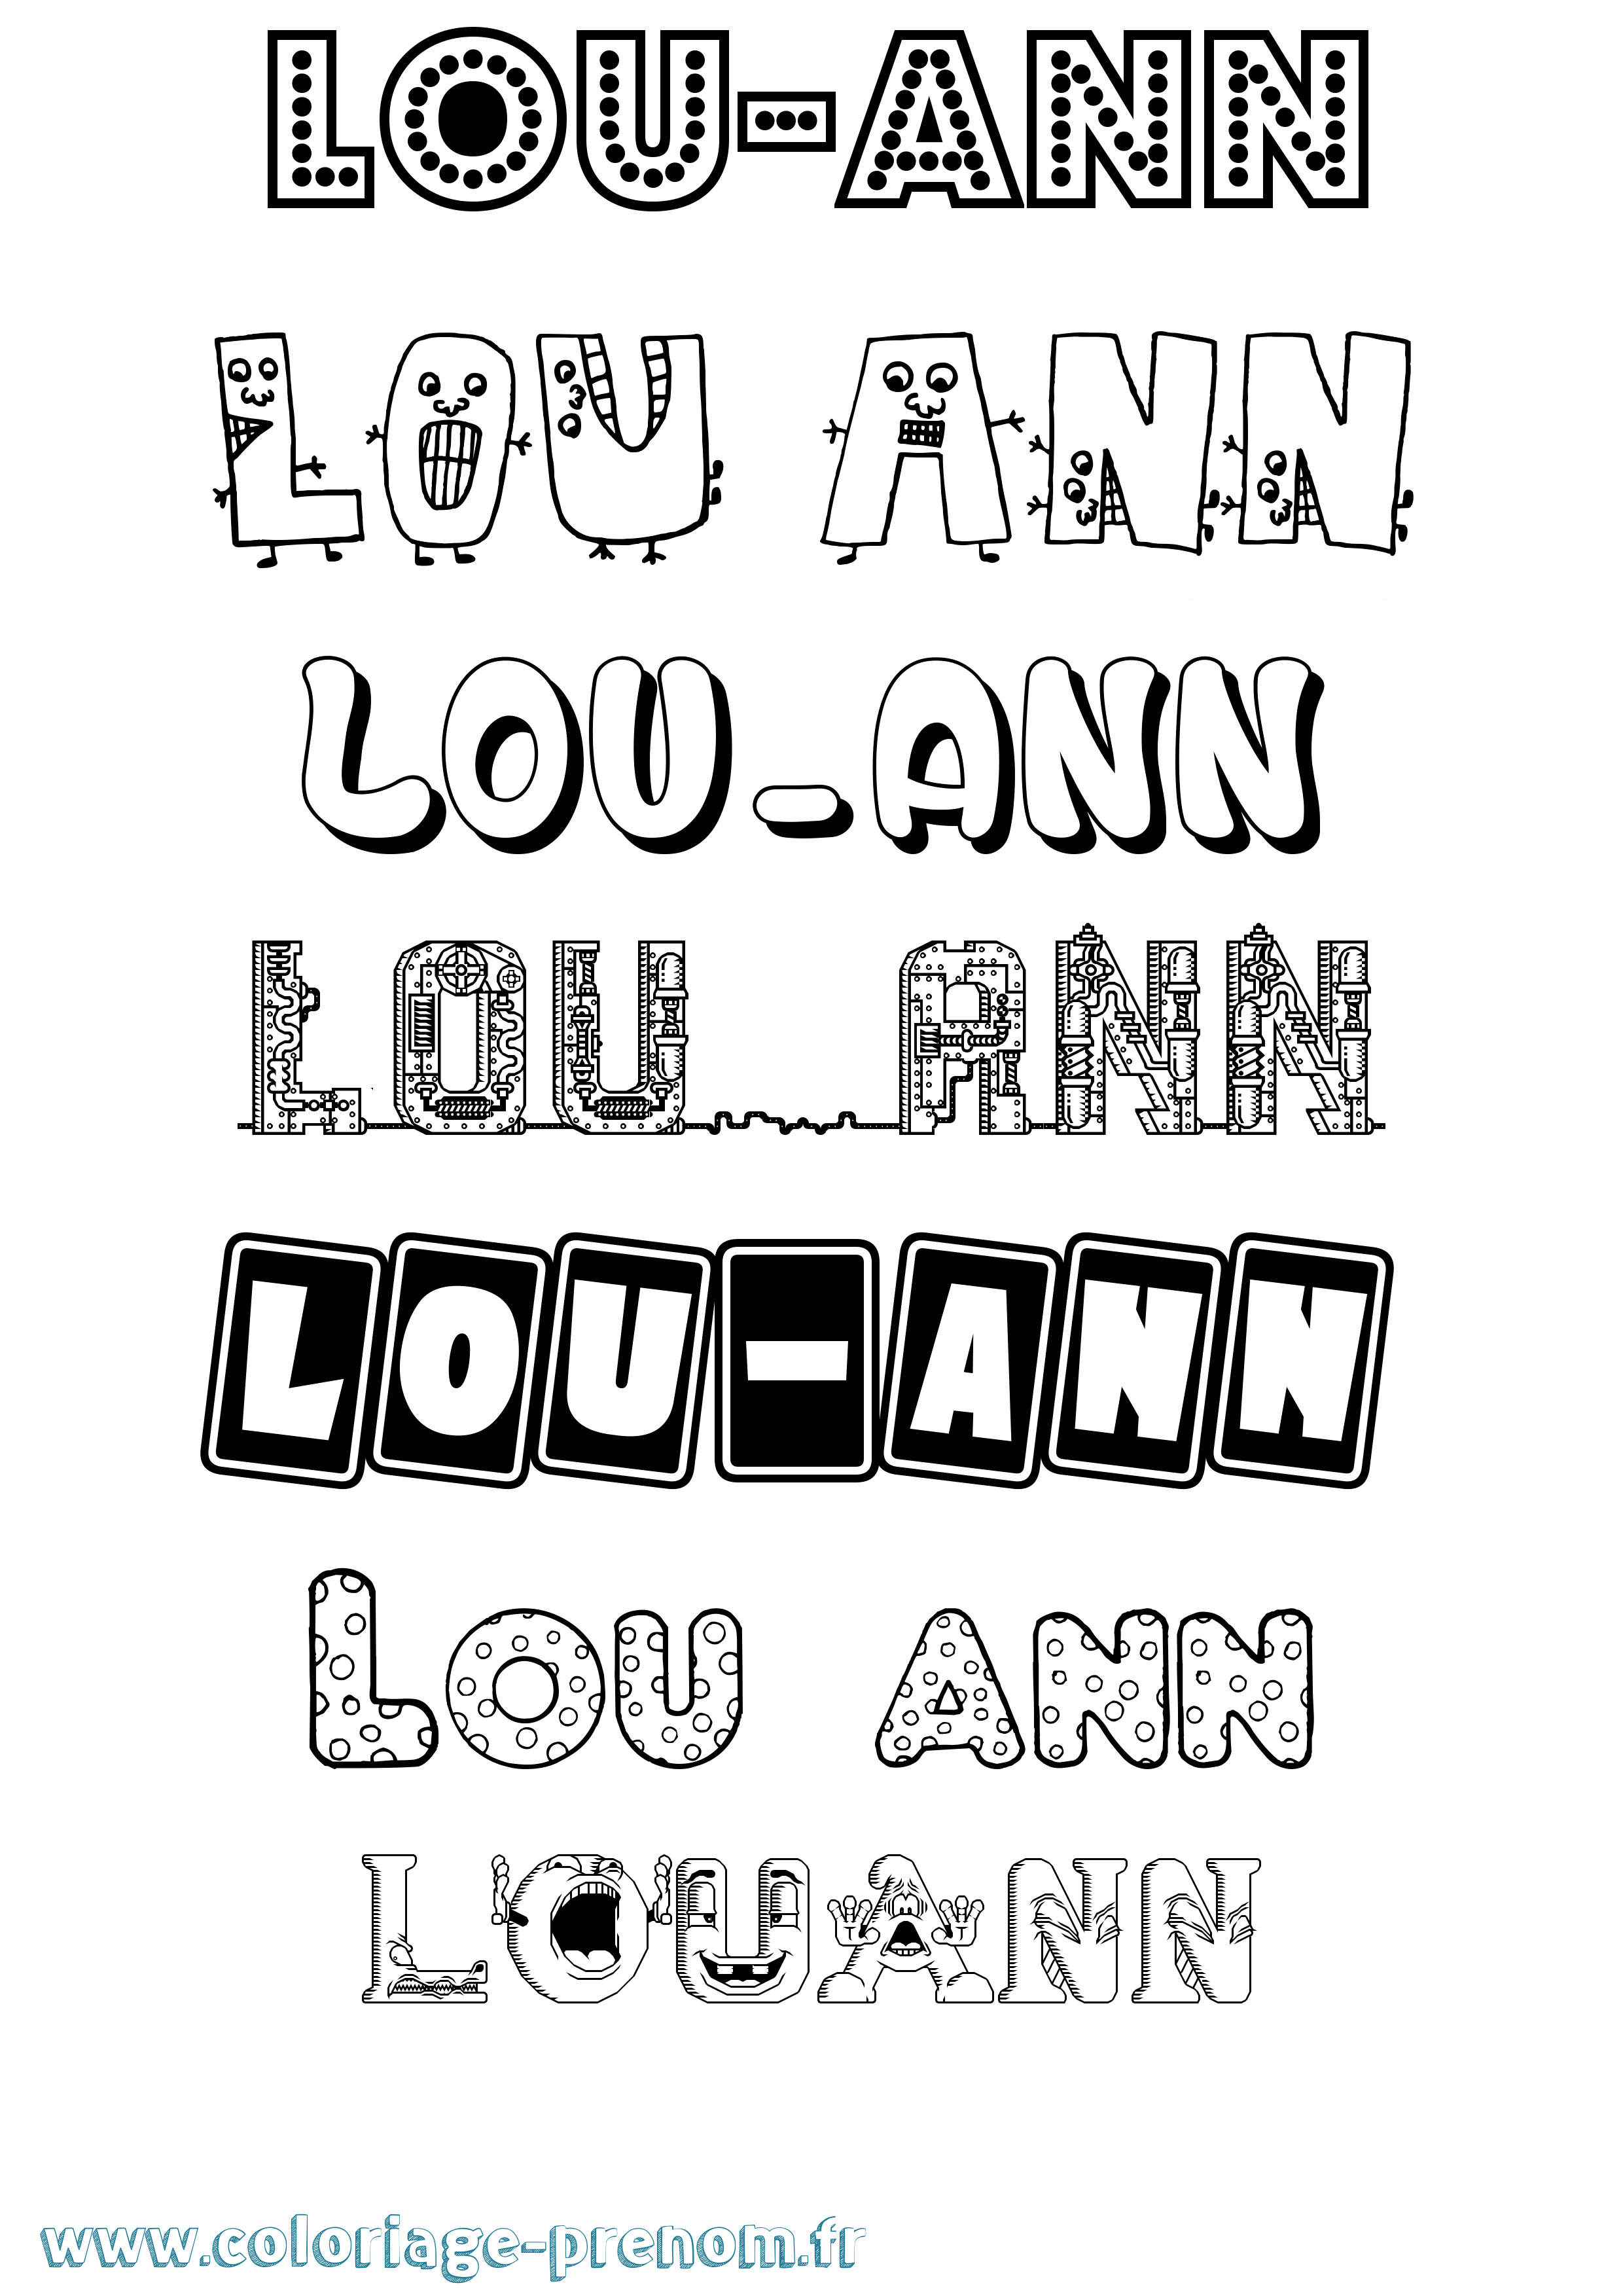 Coloriage prénom Lou-Ann